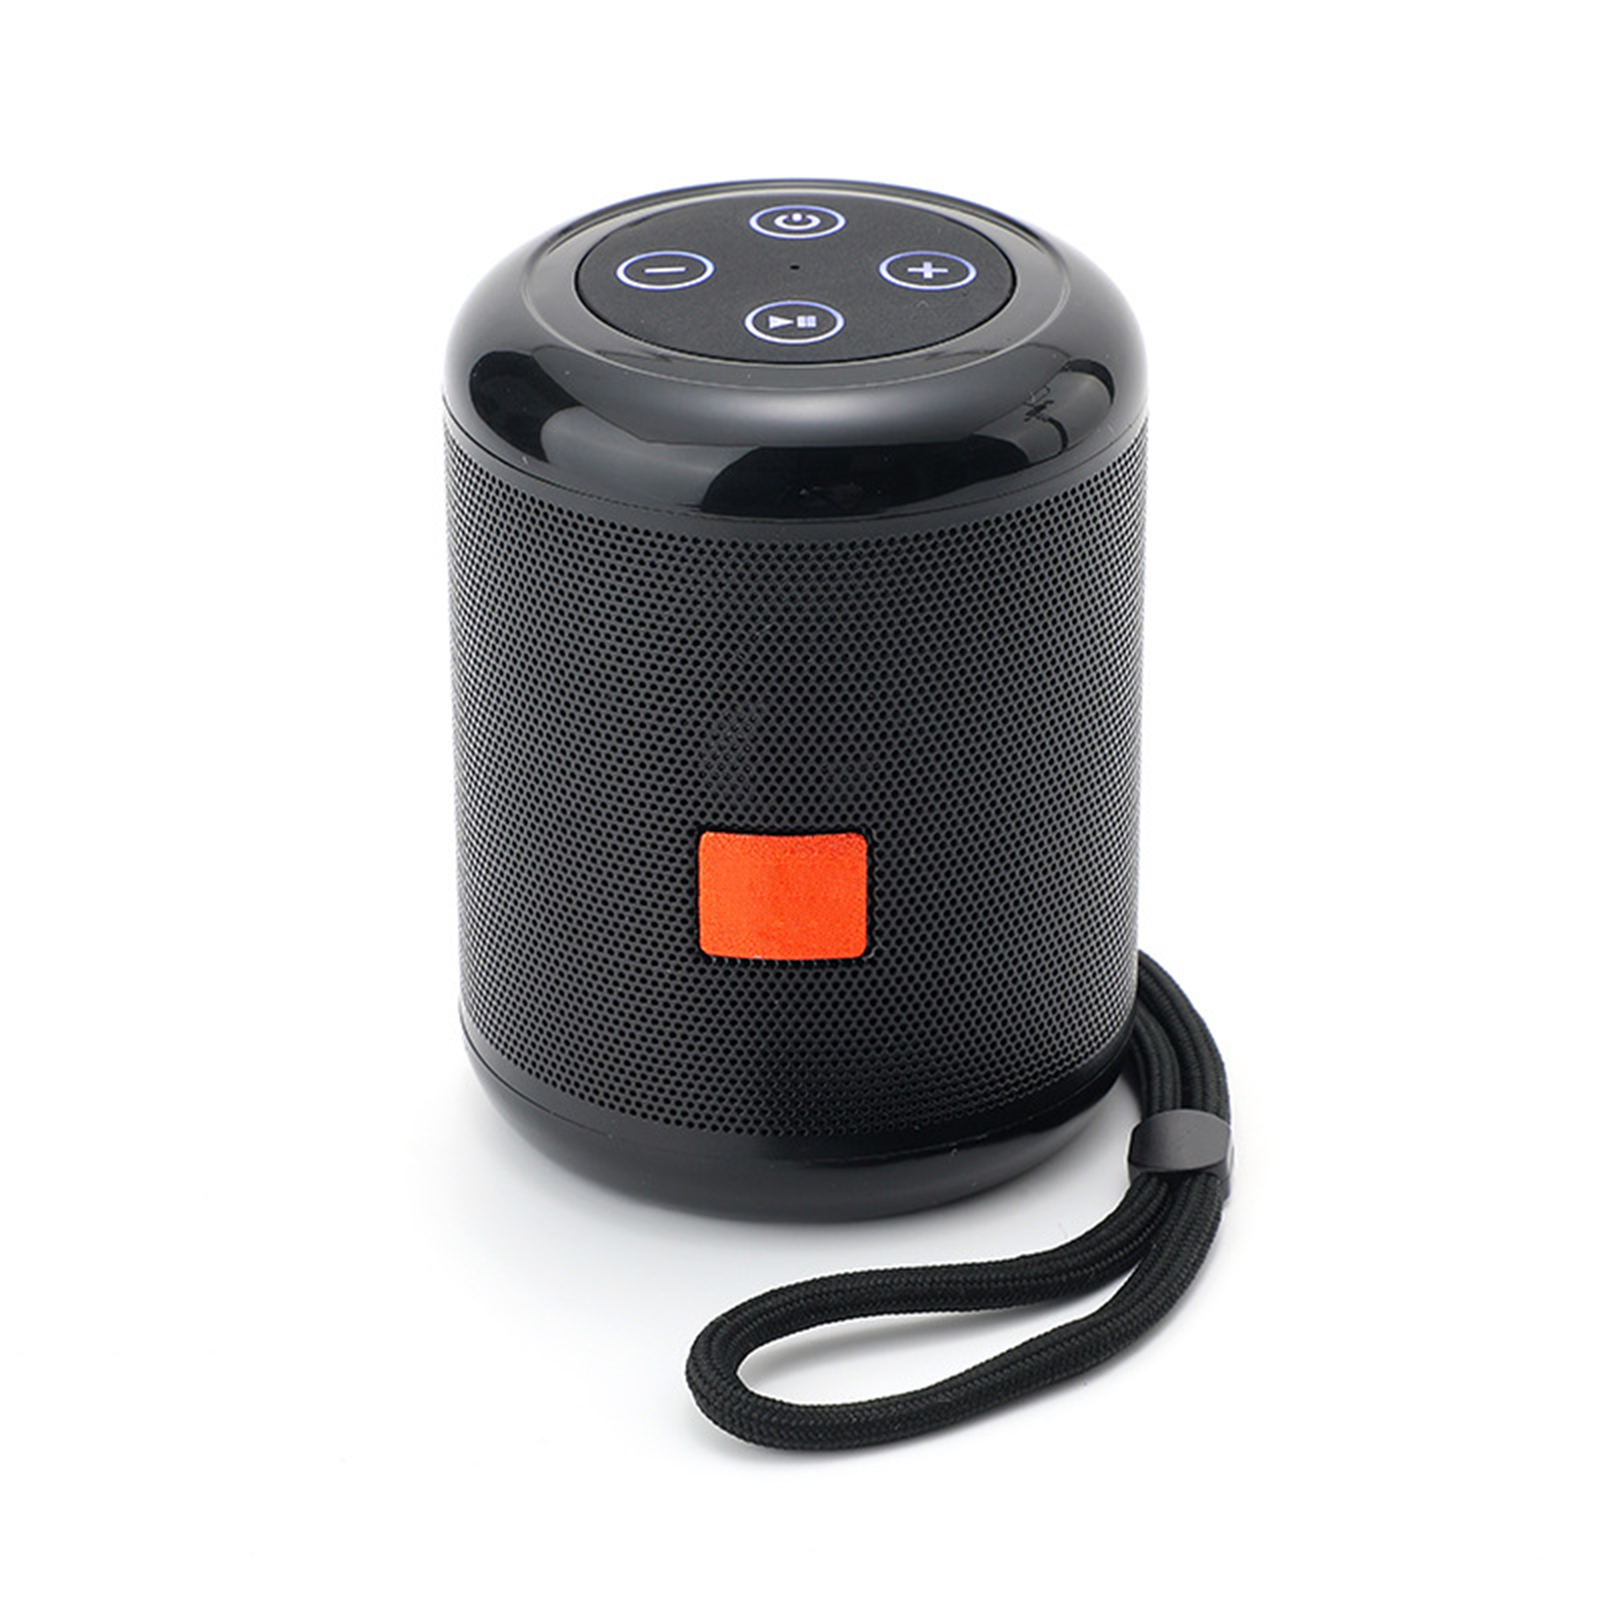 TG519 Portable Speaker Mini Wireless Speaker 10M Wireless Range USB Disk TF Card Player For Phones Travel Hiking Car